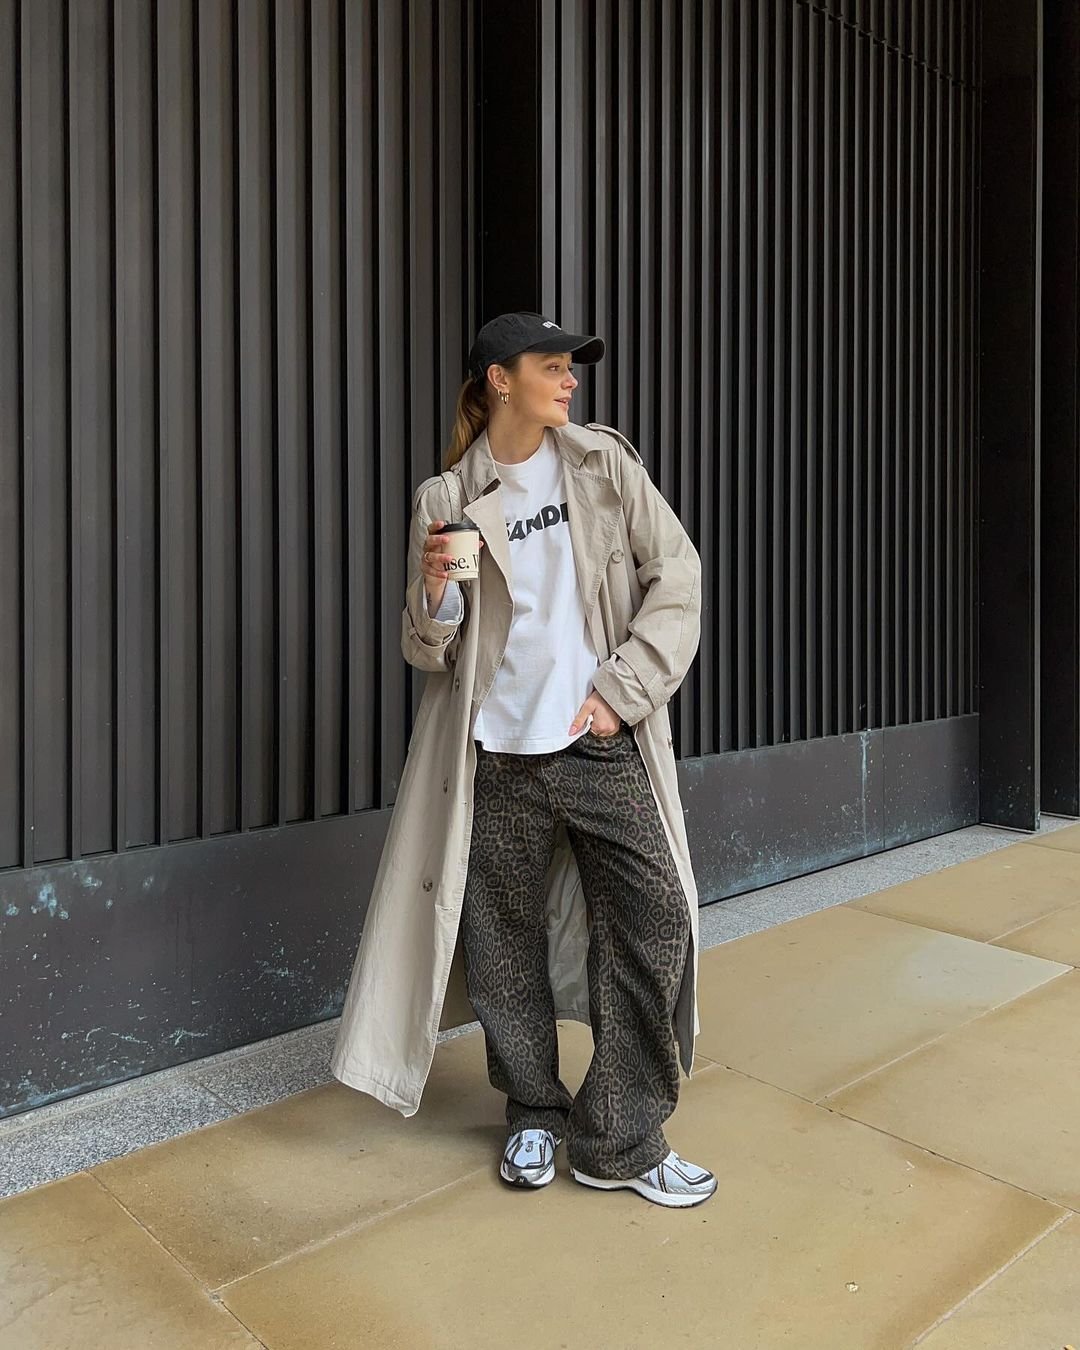 Millie Holmes - boné-preto-trench-coat-camiseta-calça-oncinha-baggy-tenis-esportivo - calça baggy - outono - London - https://stealthelook.com.br